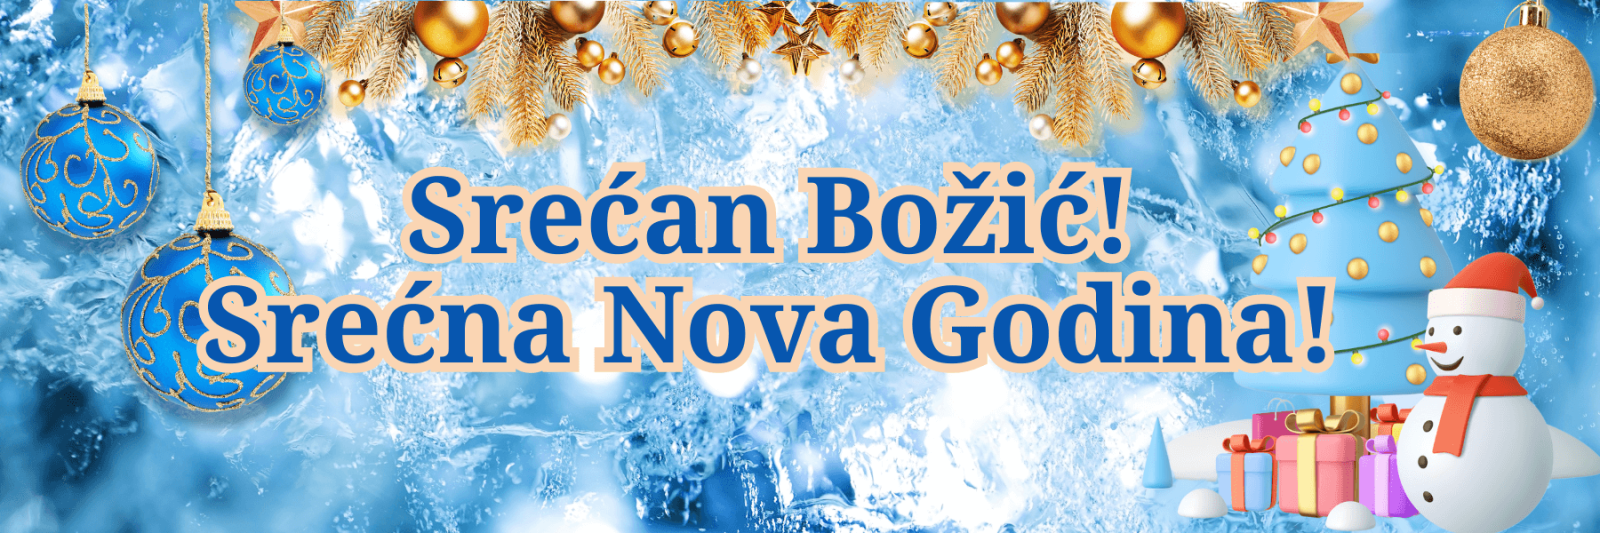 Веселого Рождества и счастливого Нового года! на черногорском языке